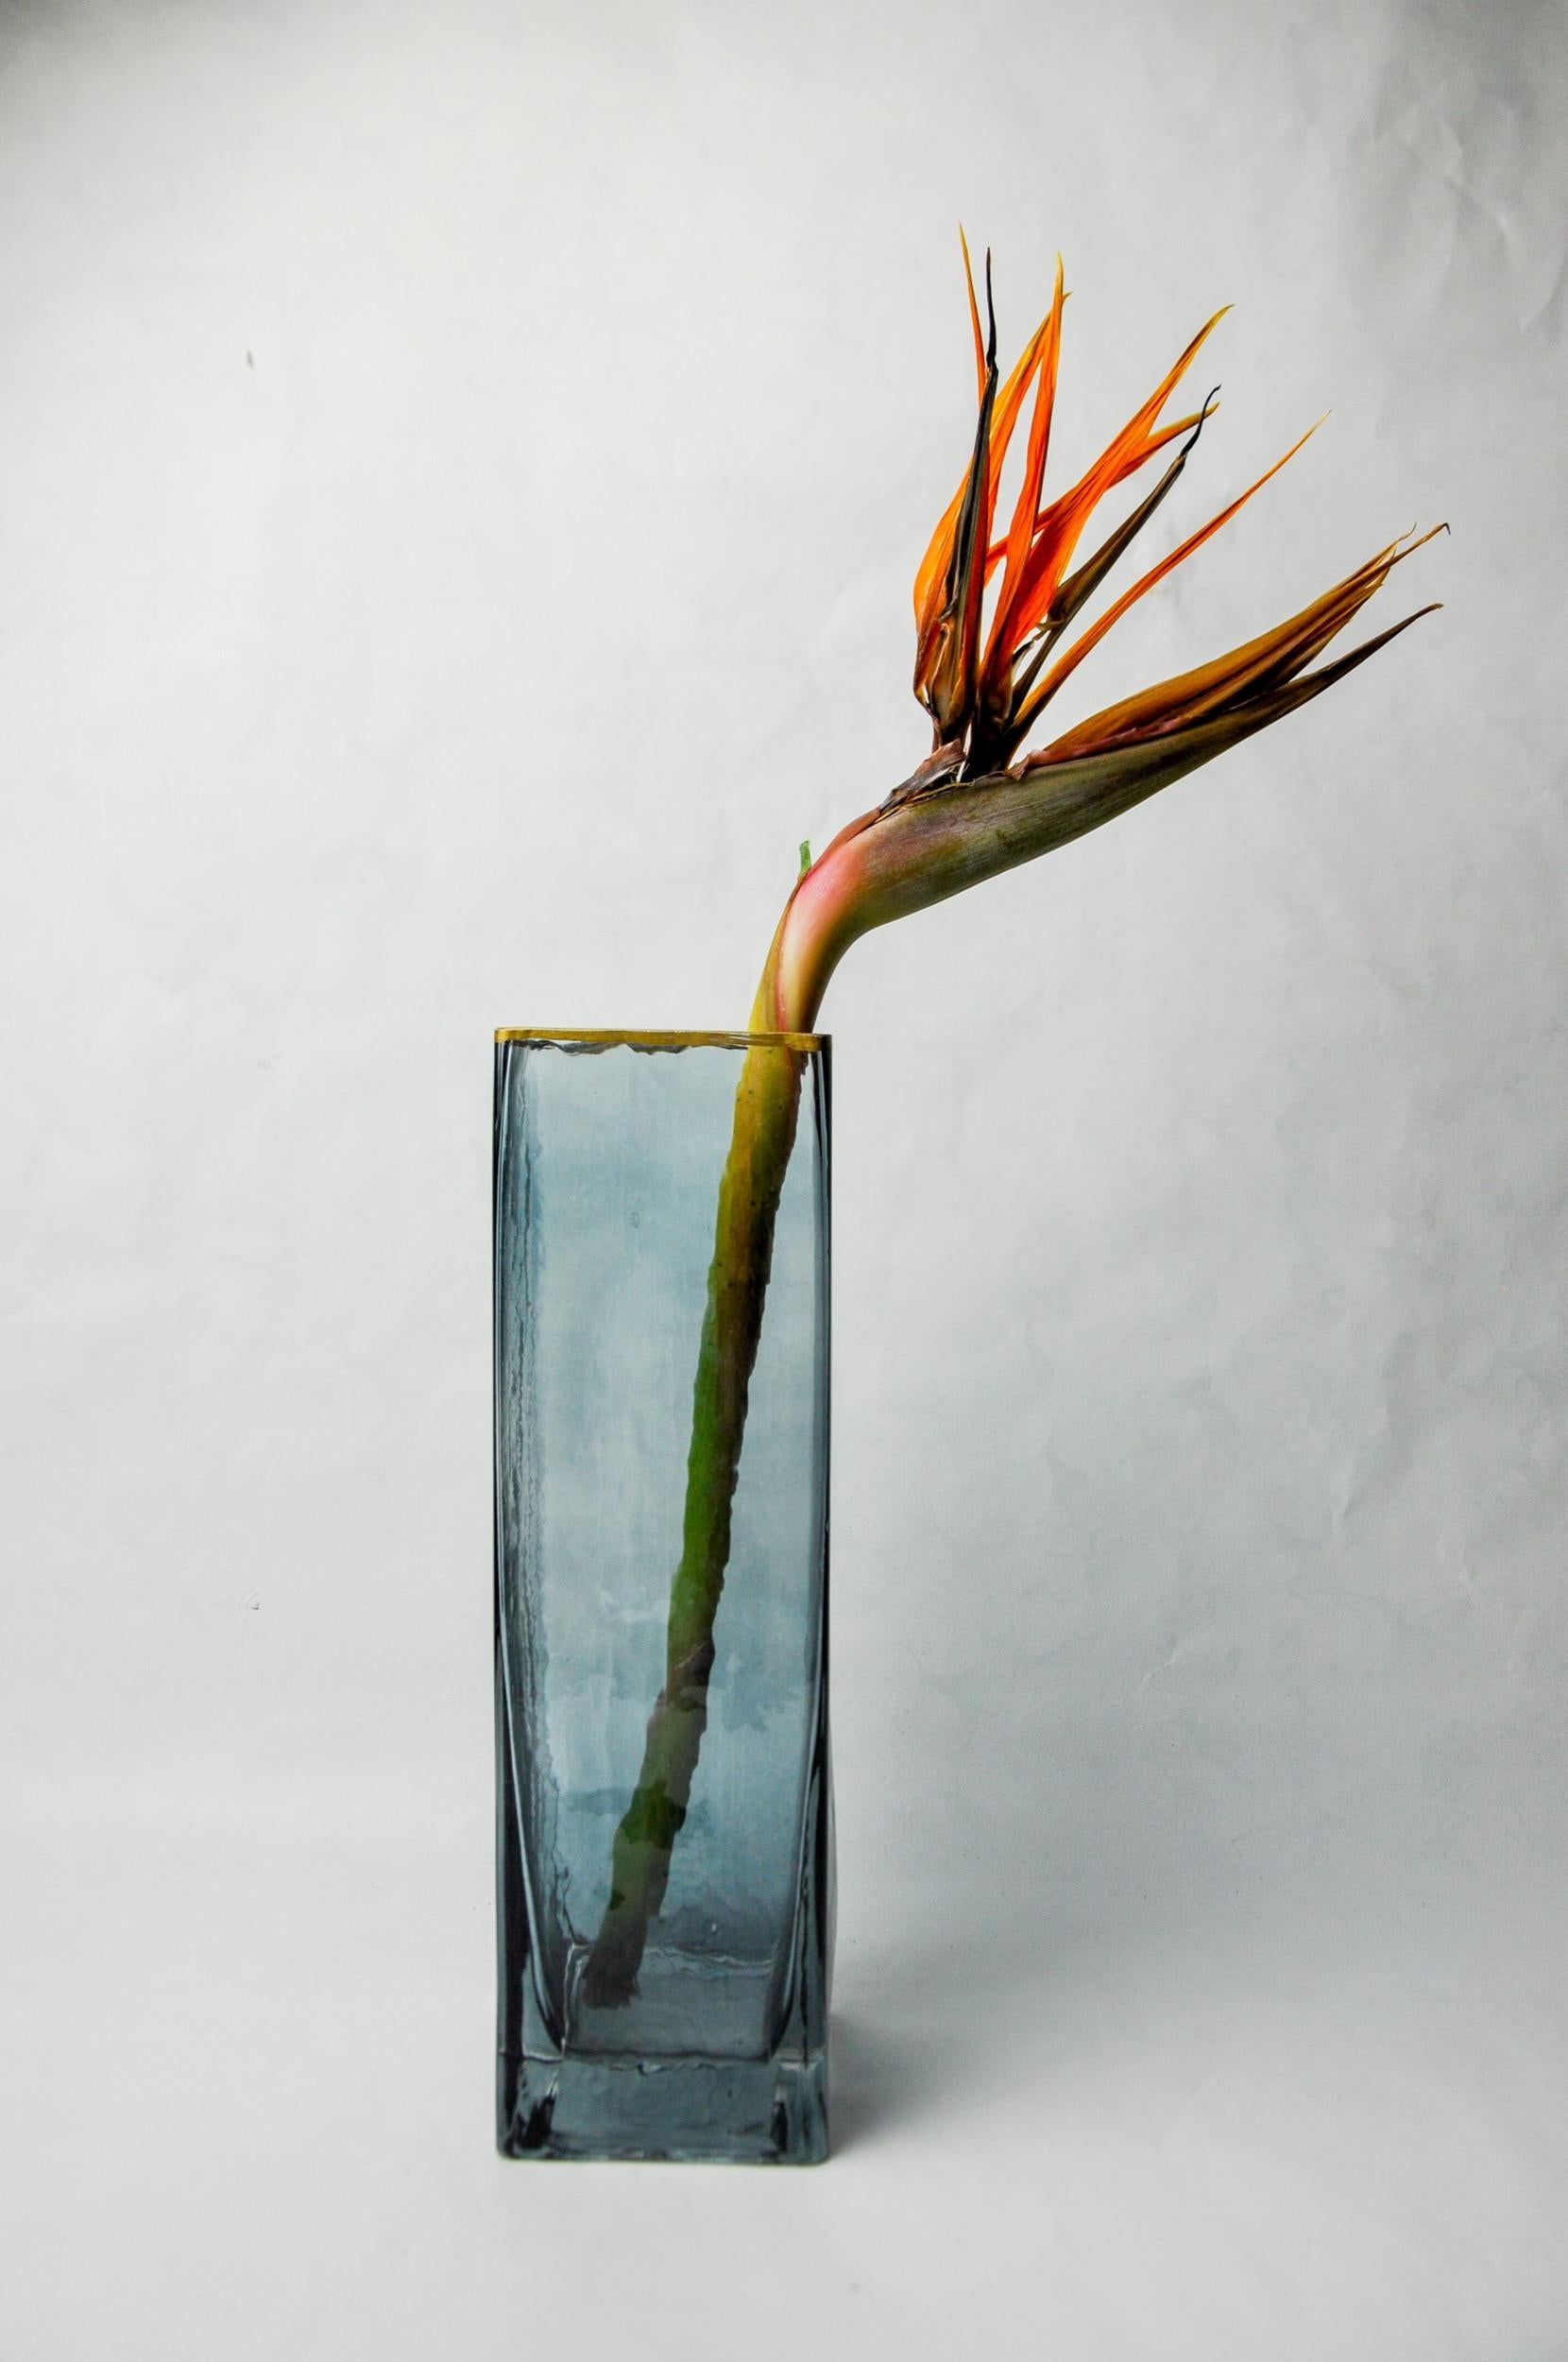 Superbe vase conçu et produit par petr hora en République tchèque dans les années 1970. Vase carré en verre bleu avec des bords dorés, fabriqué à la main par l'artiste tchèque. Objet décoratif qui apportera une véritable touche design à votre